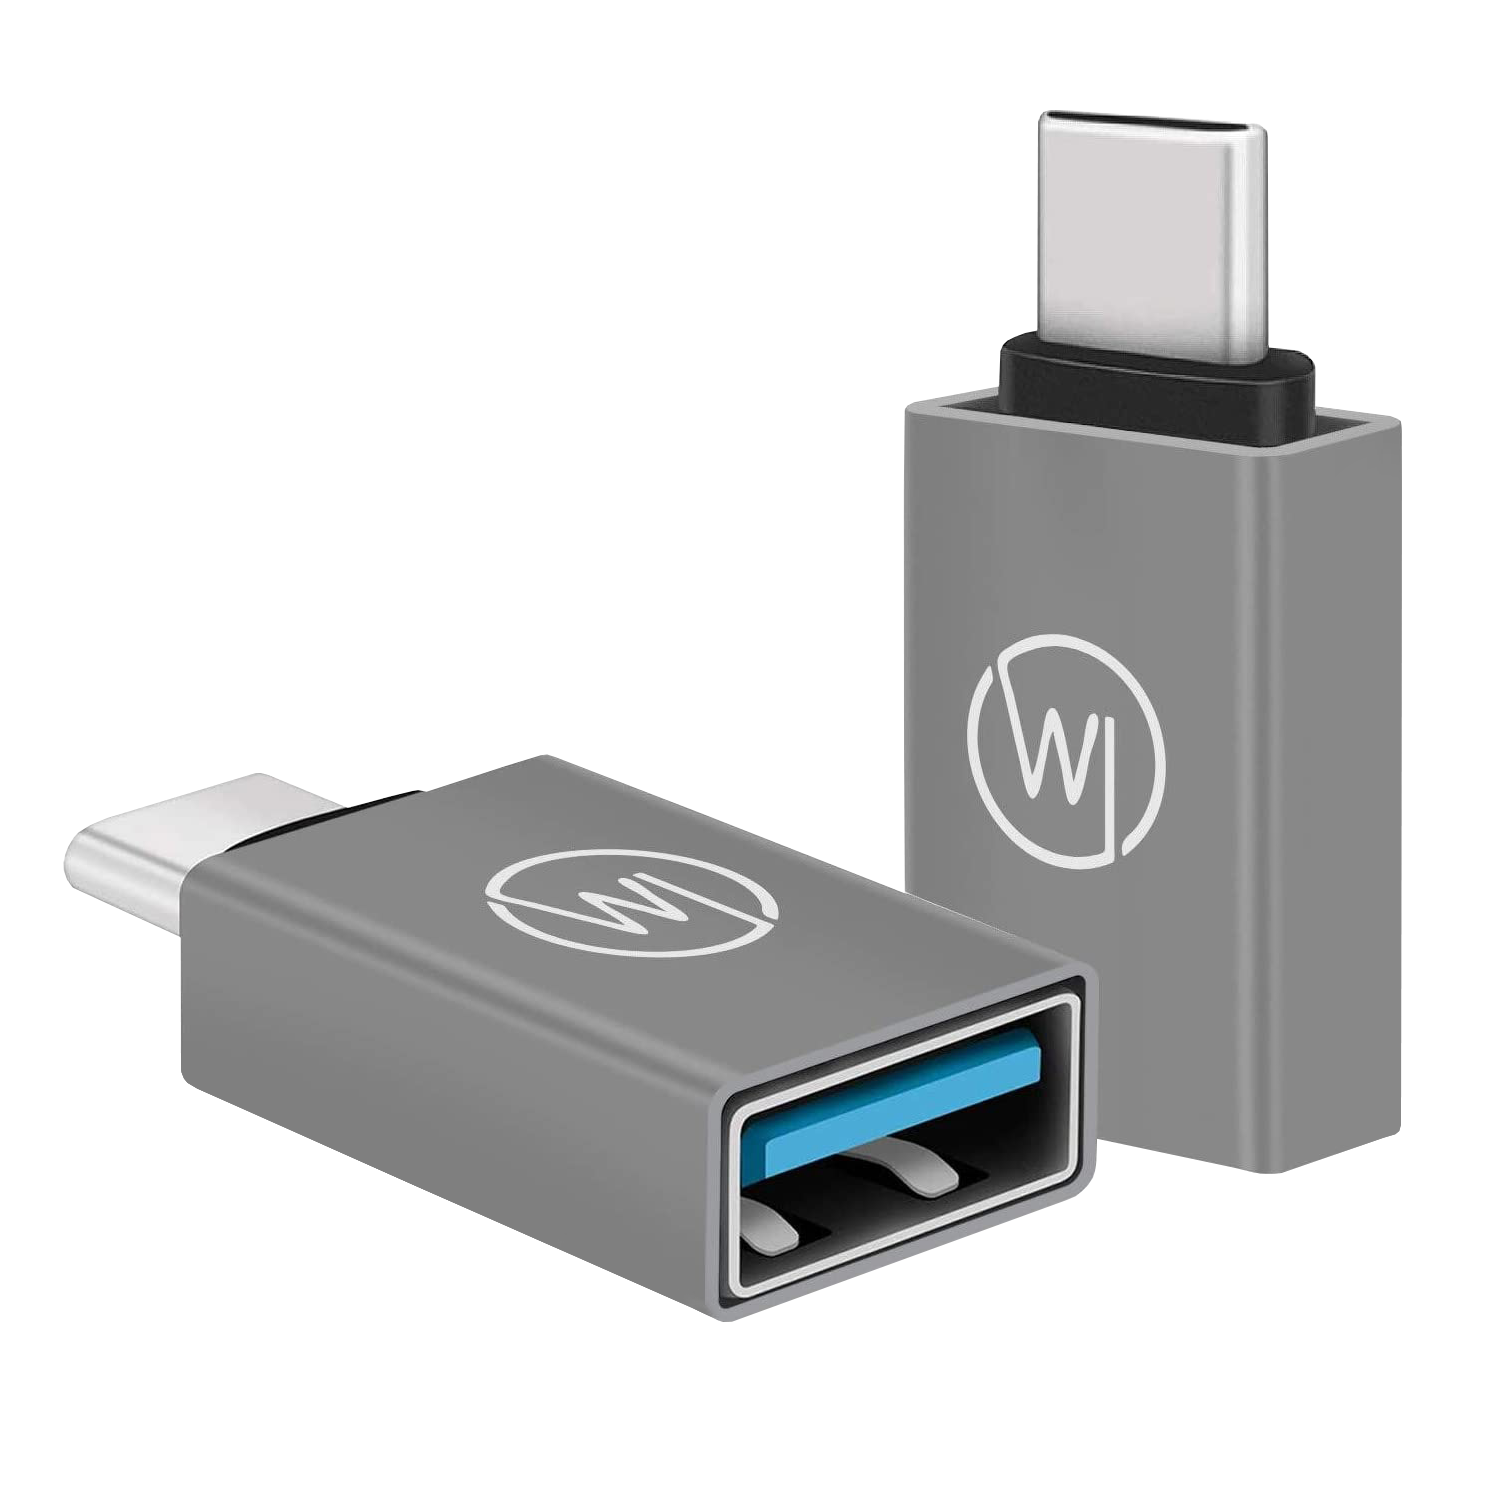 Laptop Stück Air, iPad Adapter Stick Festplatte auf für CHILI für & Galaxy, und Gen.1 MacBook, USB-C USB-A 2 OTG Pro, Surface WICKED 3.2 C USB Stecker